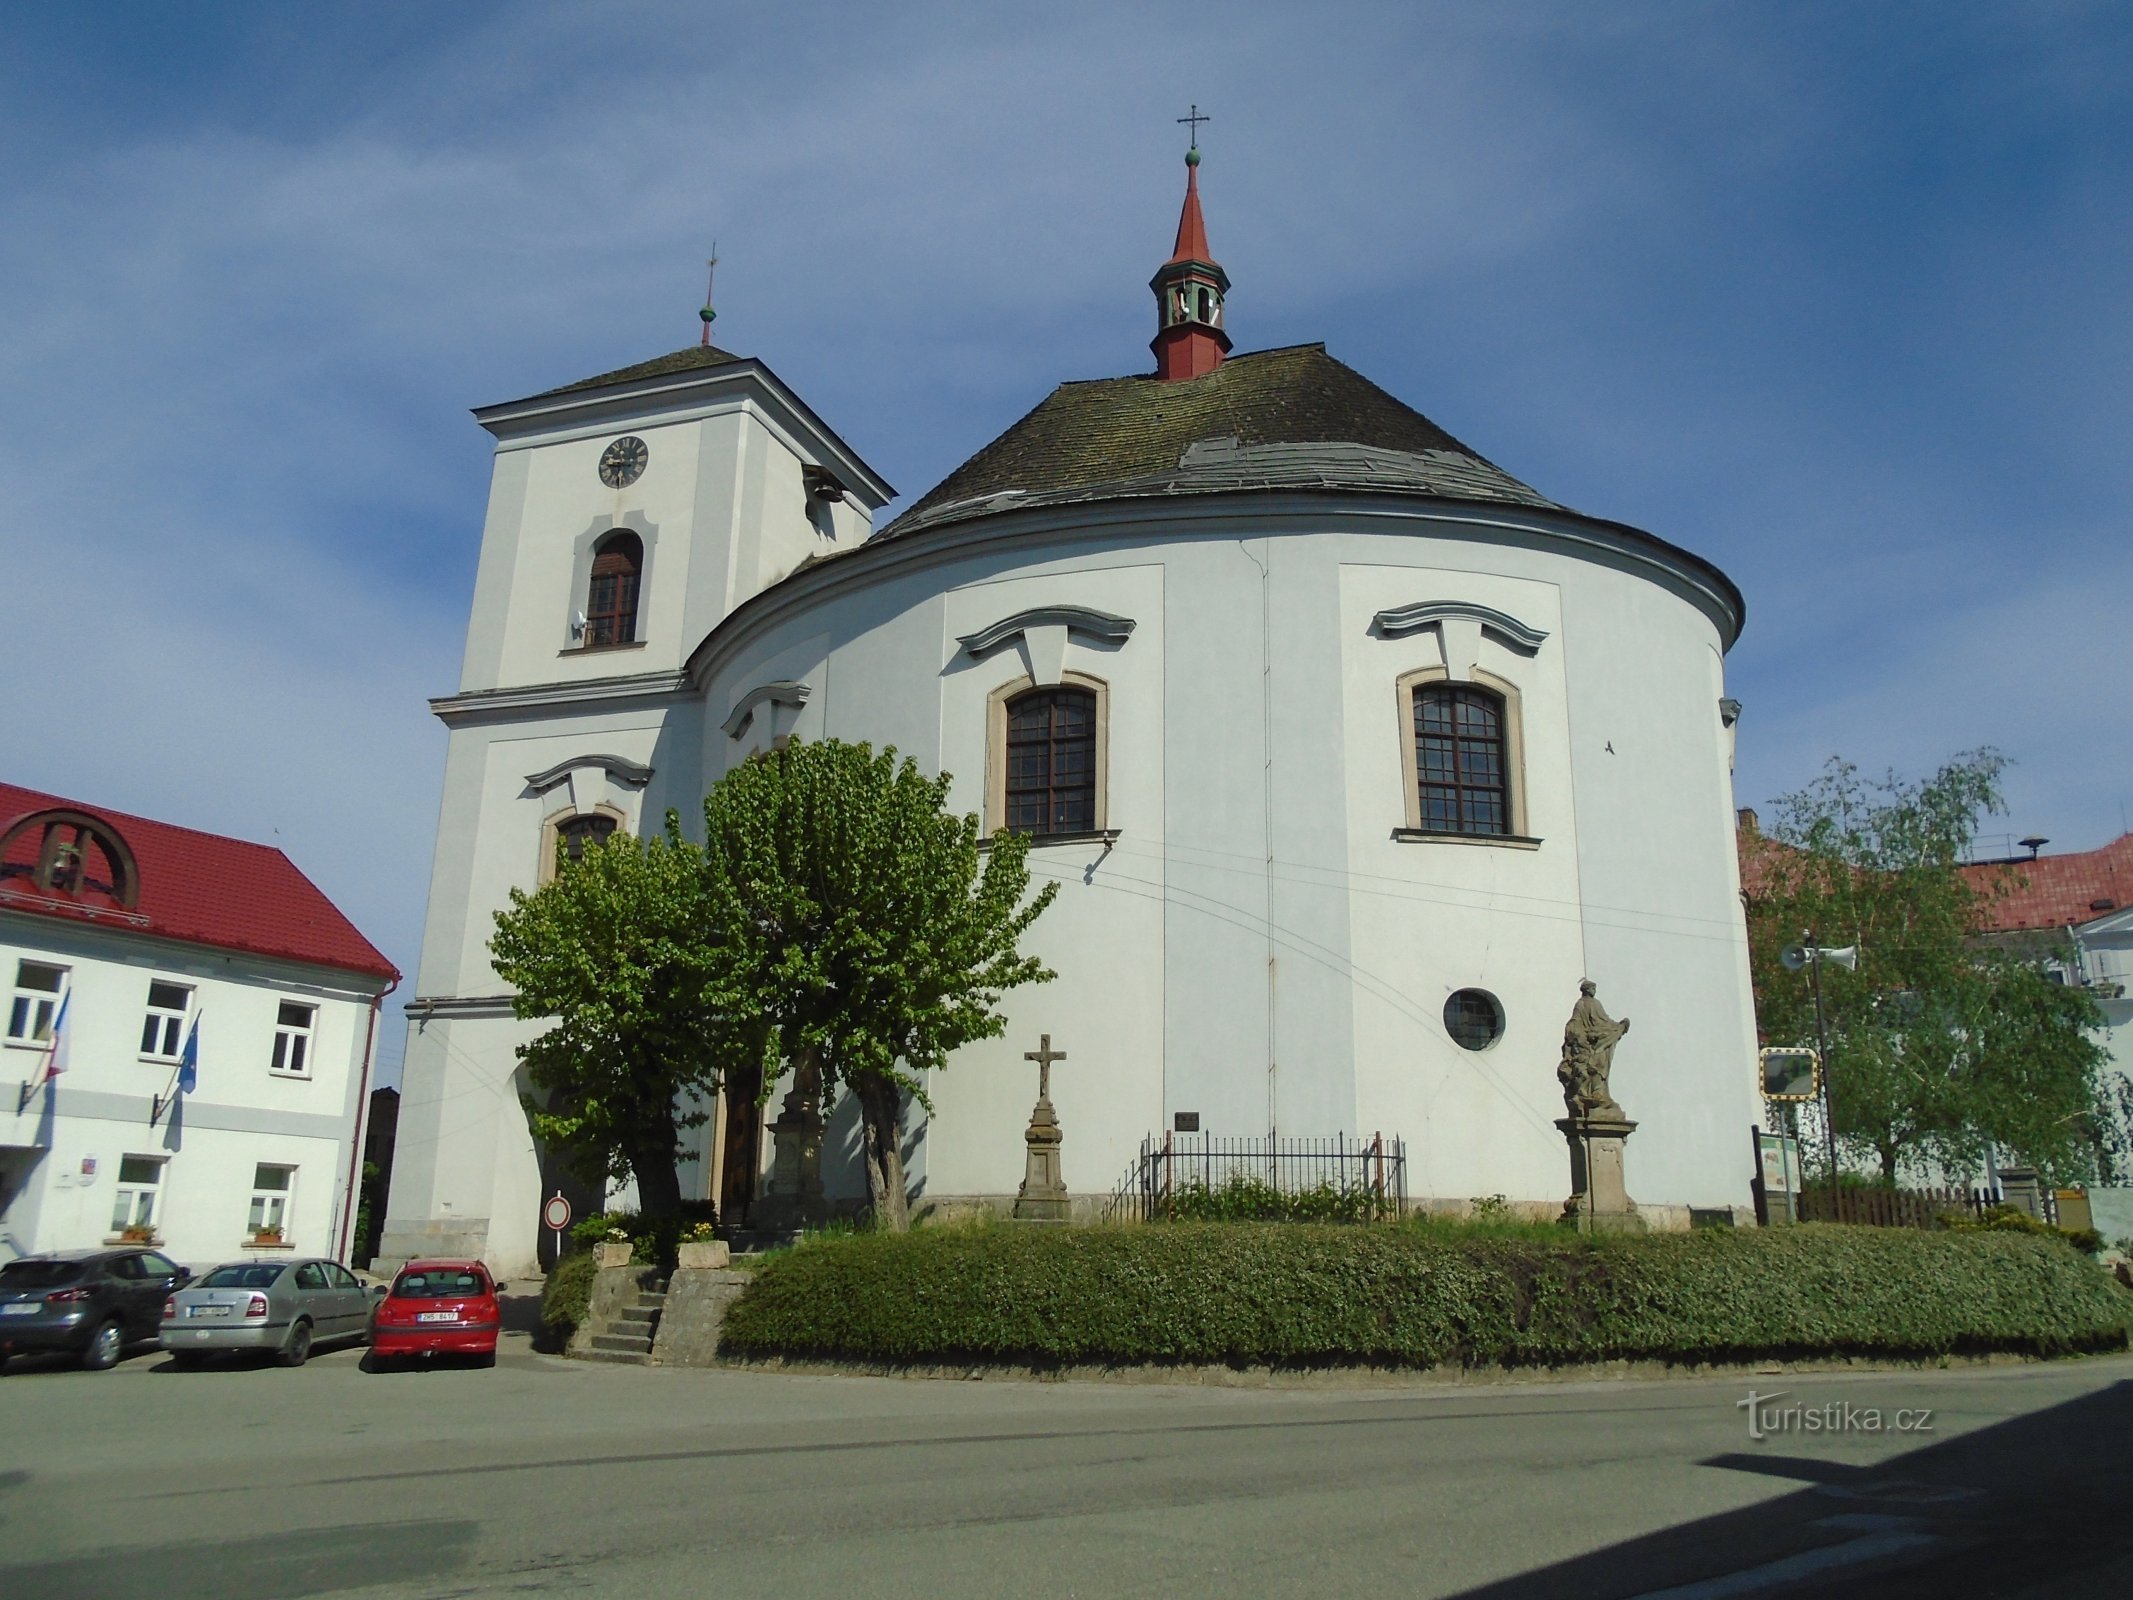 Nhà thờ Truyền tin của Đức Trinh nữ Maria (Cerekvice nad Bystřicí)